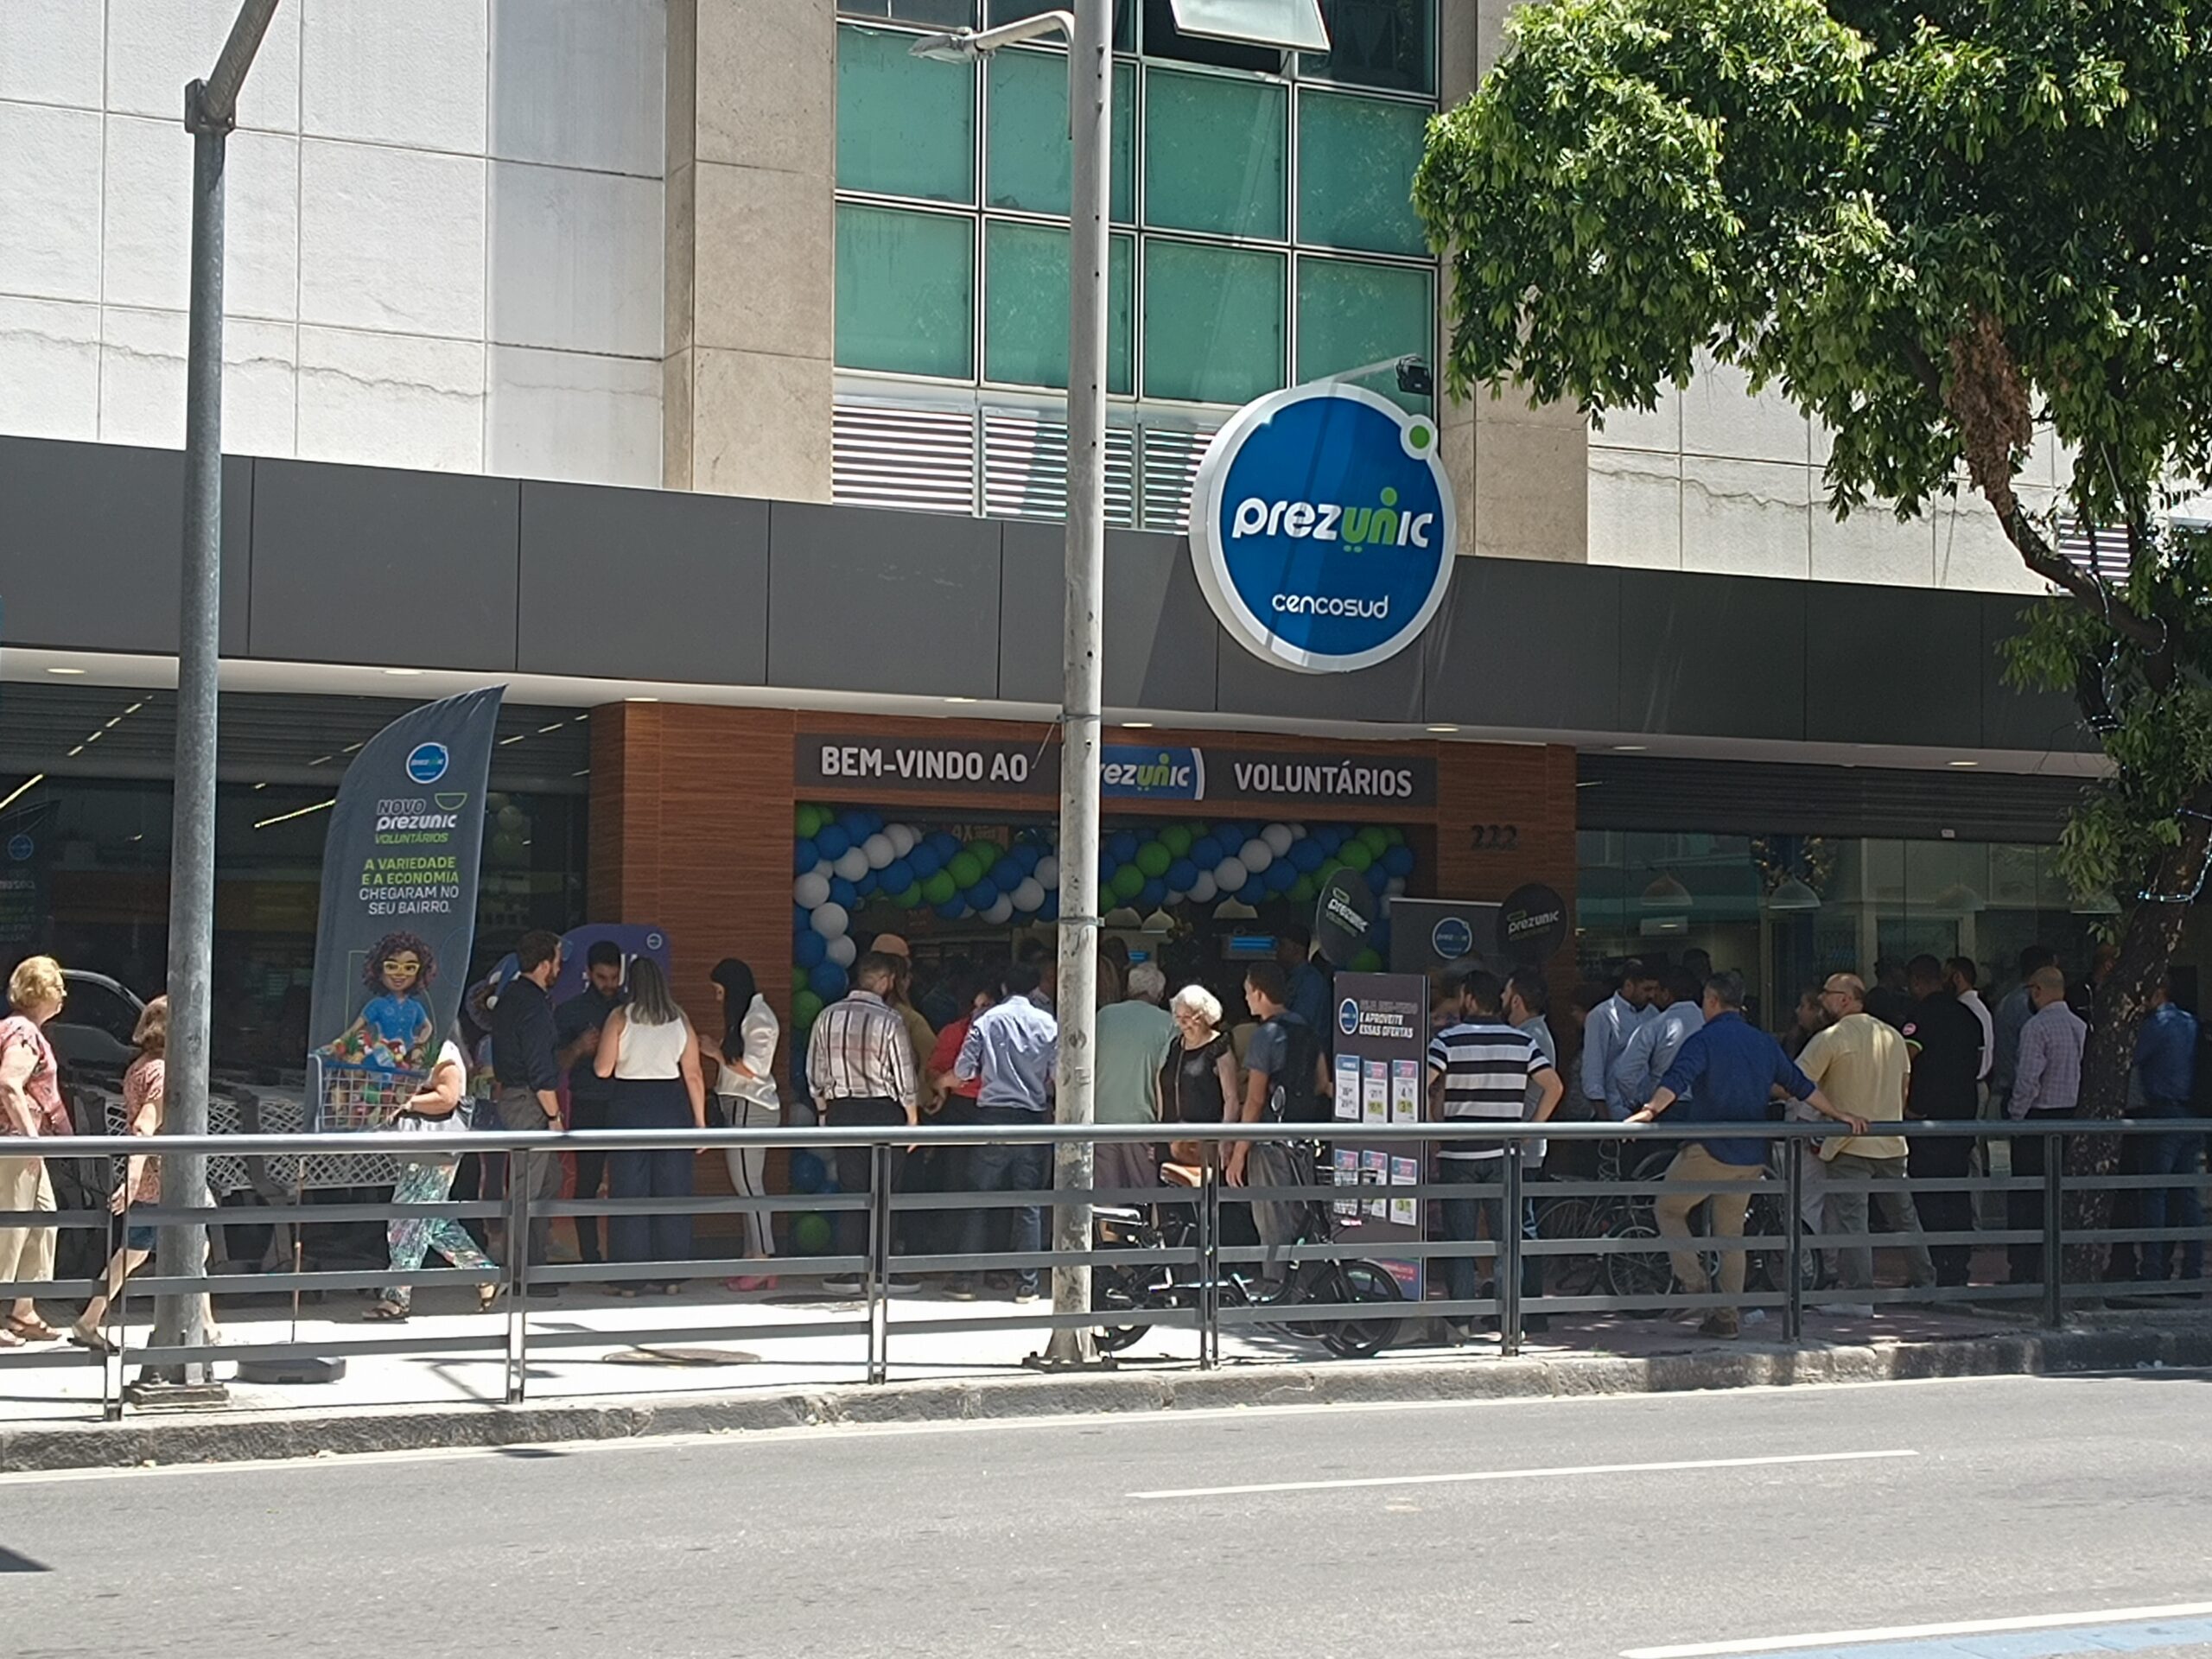 Rede de supermercados Prezunic inaugurou nesta quinta-feira, mais uma loja no Rio de Janeiro, desta vez, em Botafogo, Zona Sul.